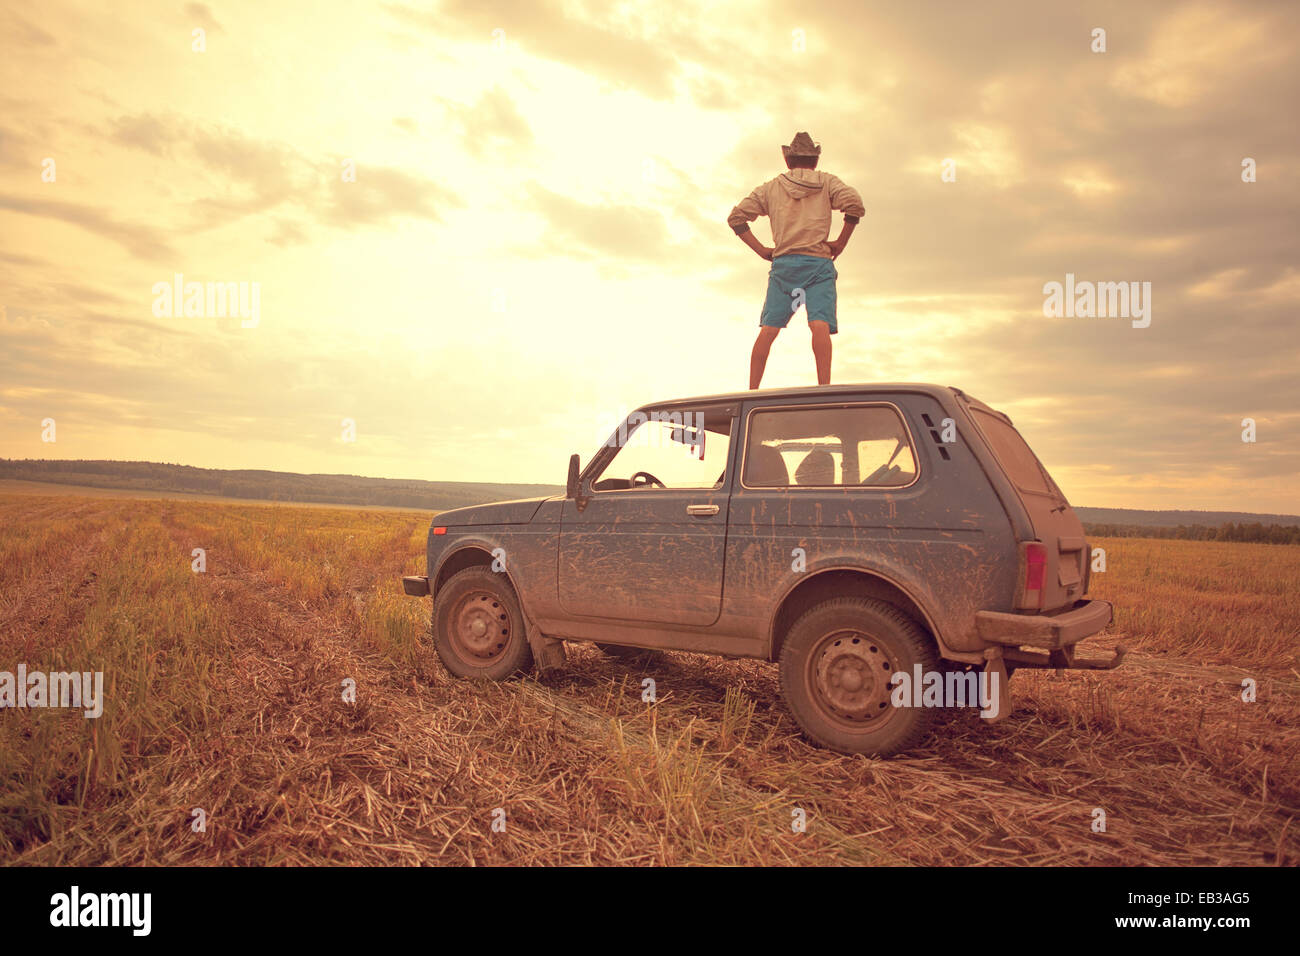 Mari uomo in piedi sul tetto del veicolo in campo rurale Foto Stock